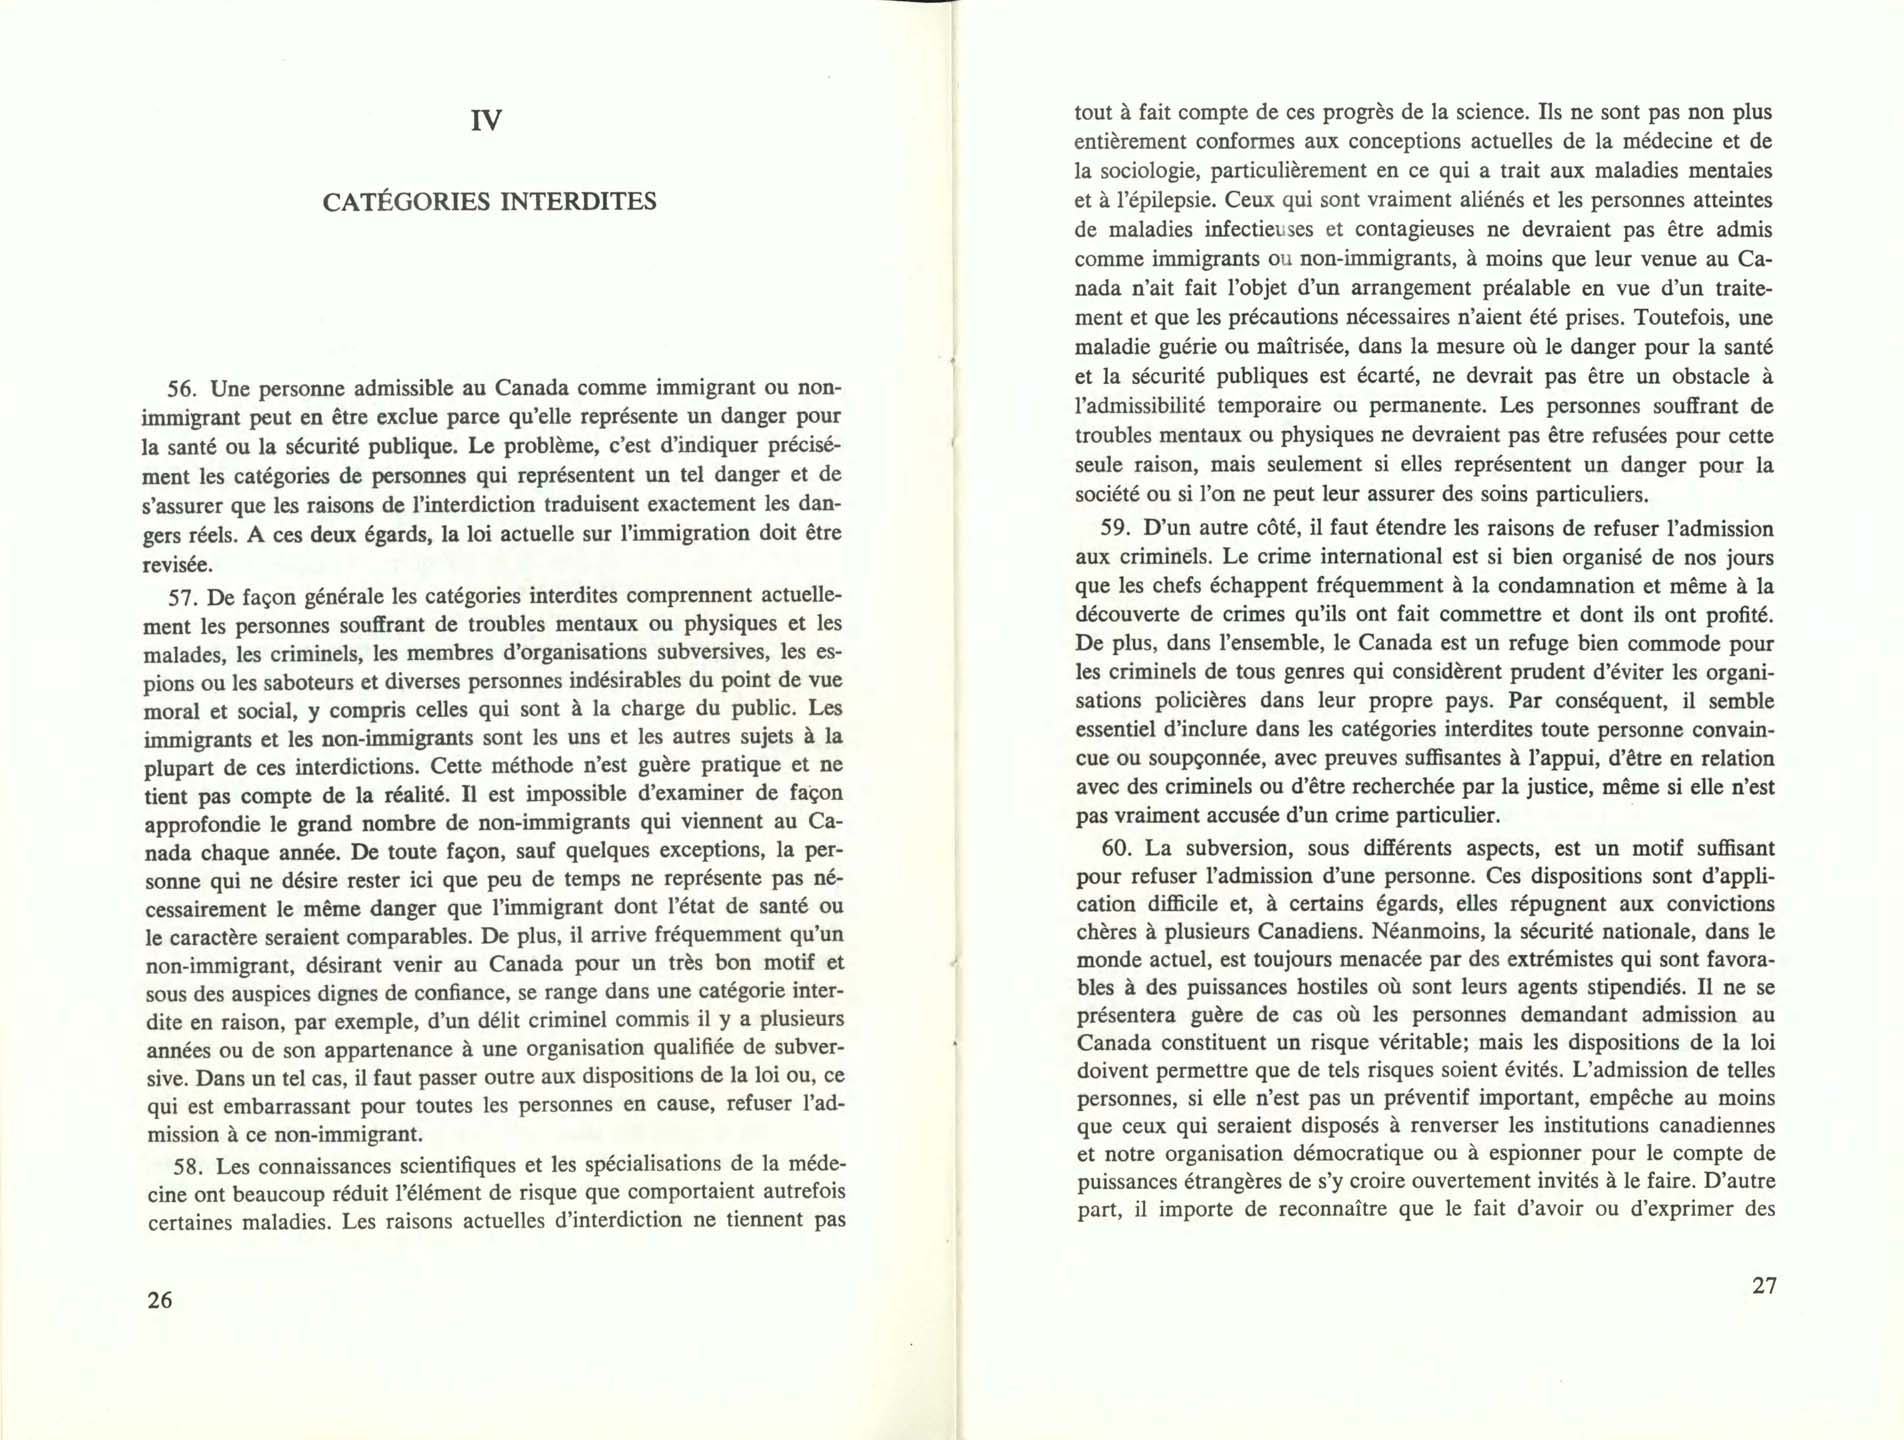 Page 26, 27 Livre Blanc sur l’immigration, 1966